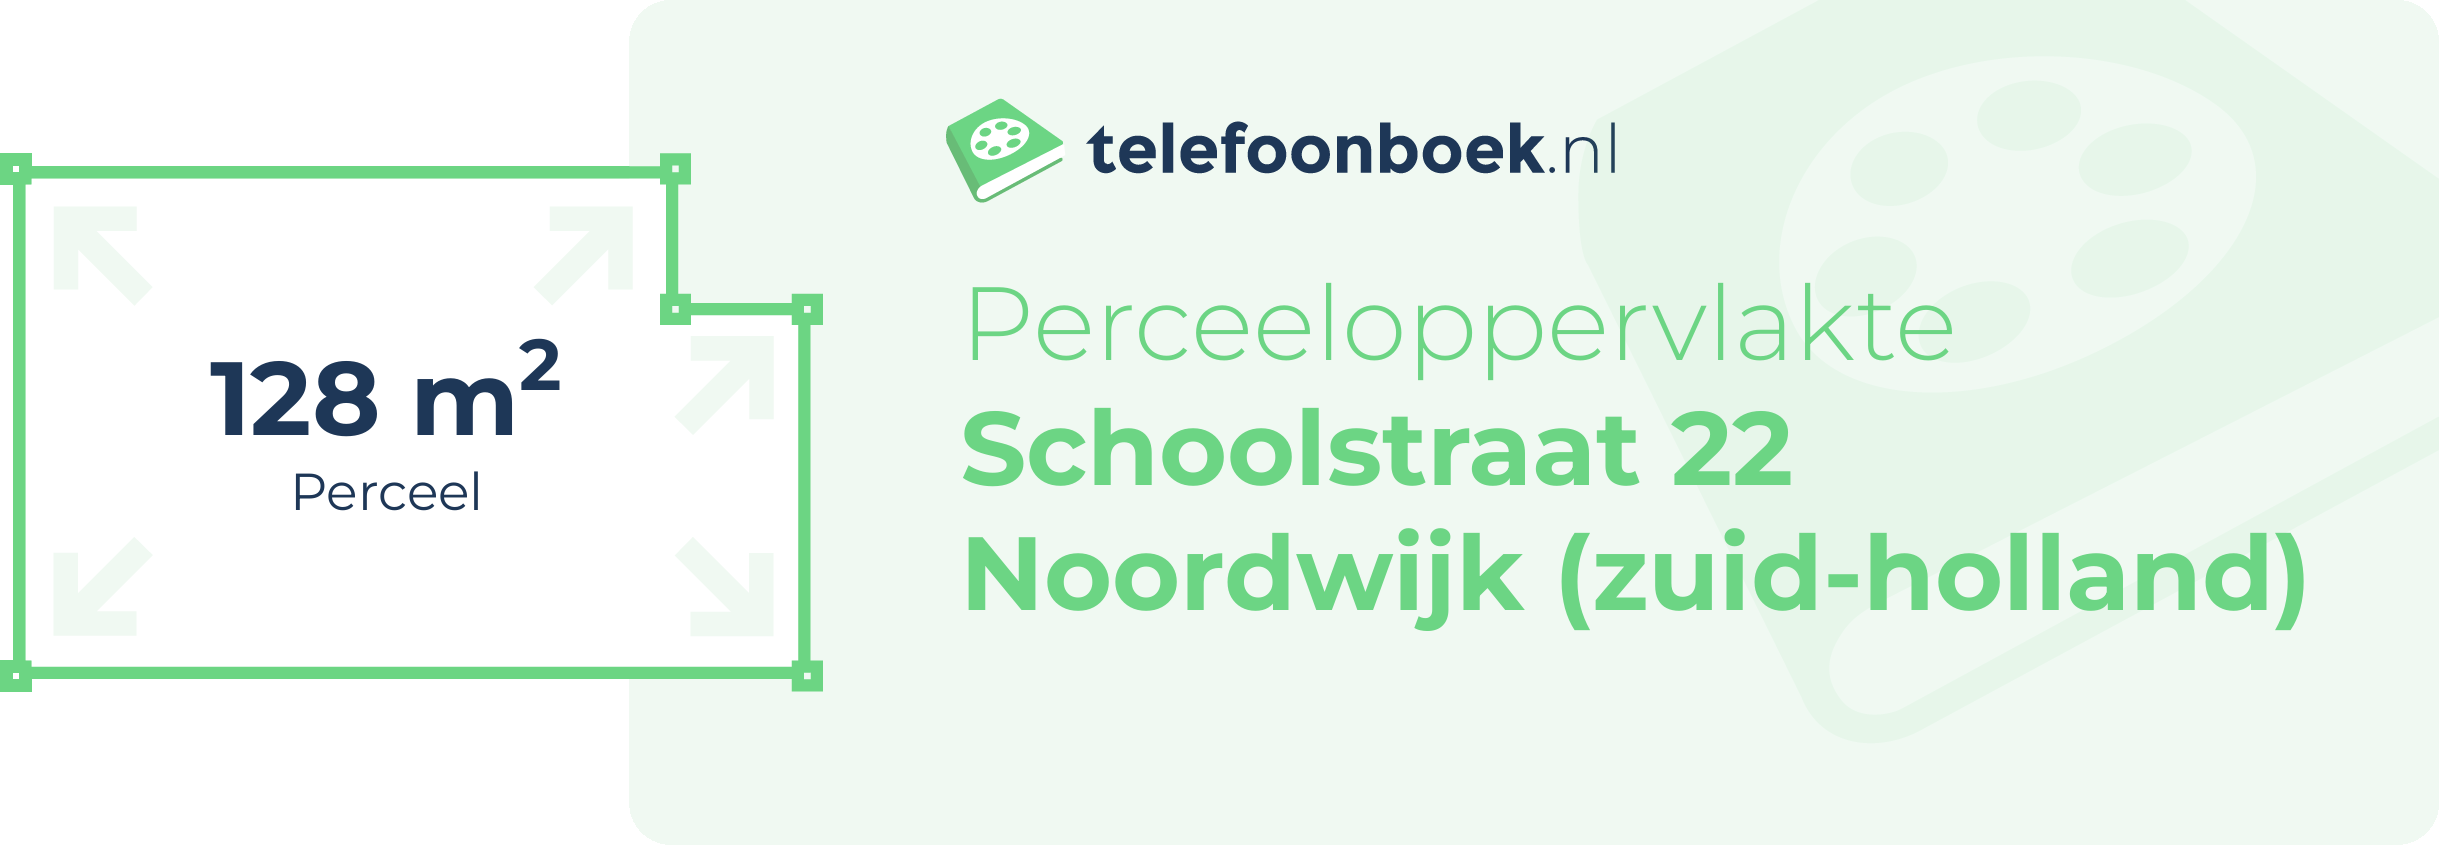 Perceeloppervlakte Schoolstraat 22 Noordwijk (Zuid-Holland)